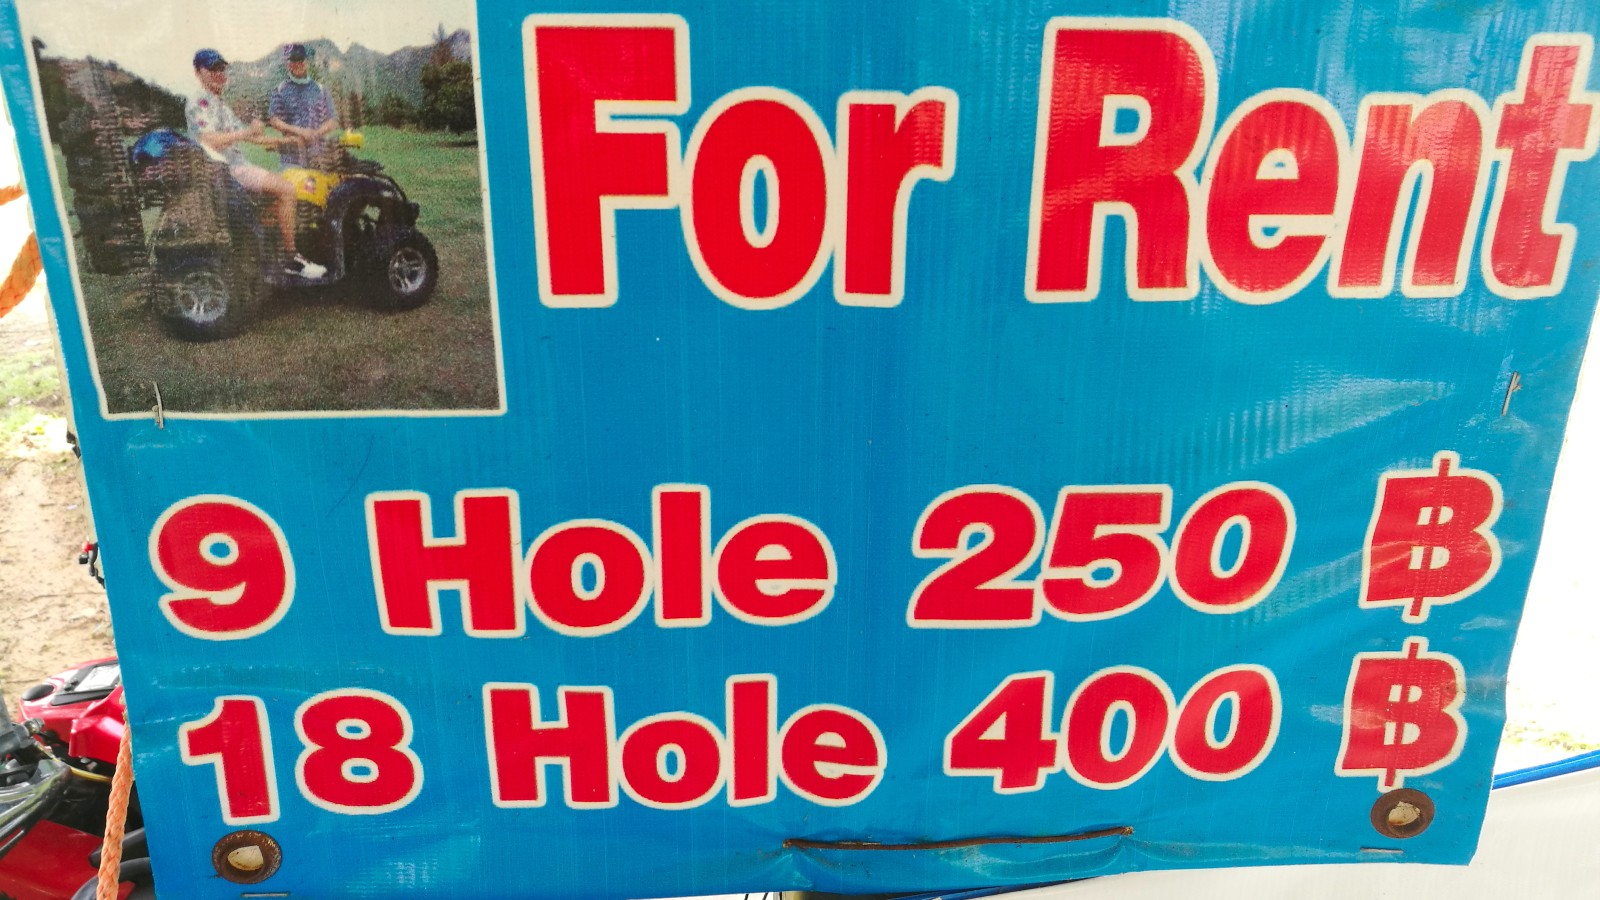 sign describing the ATV rental prices at a golf course in Thailand